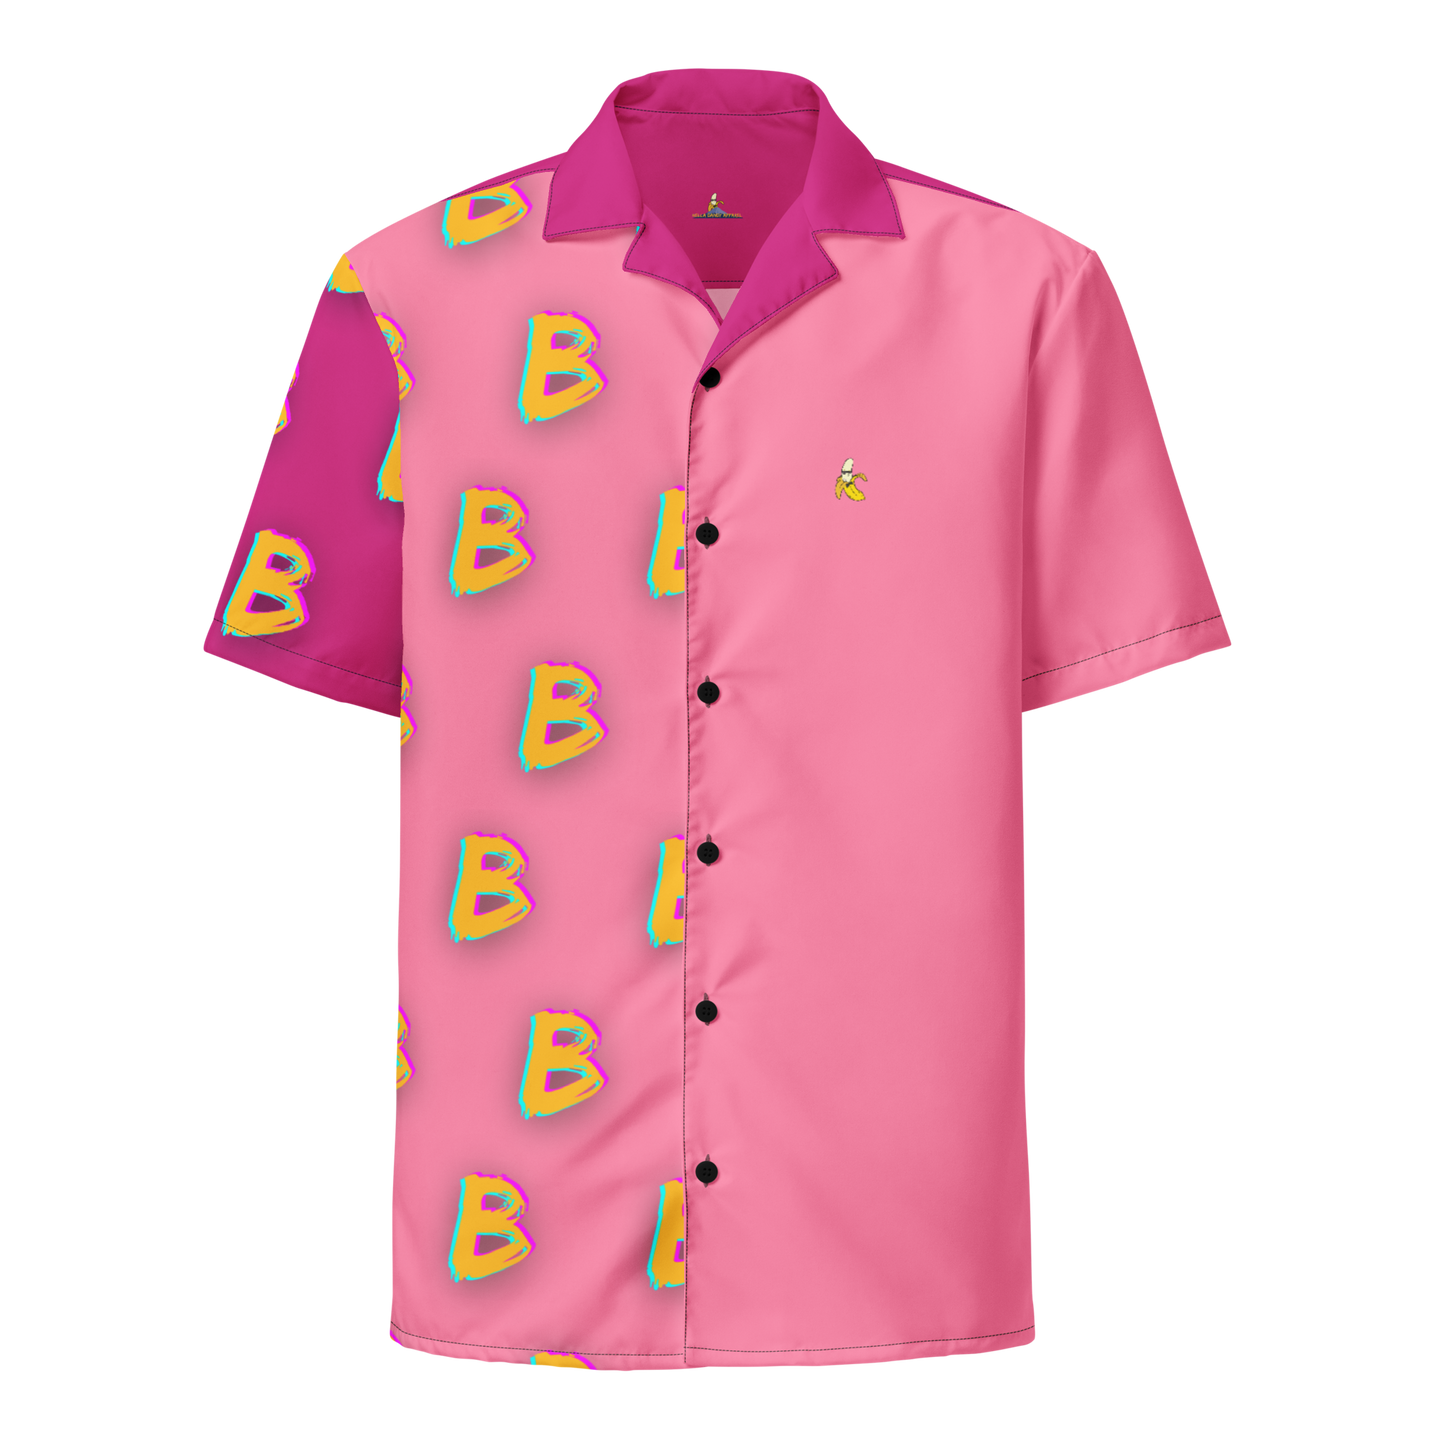 B B B B B B Unisex button shirt